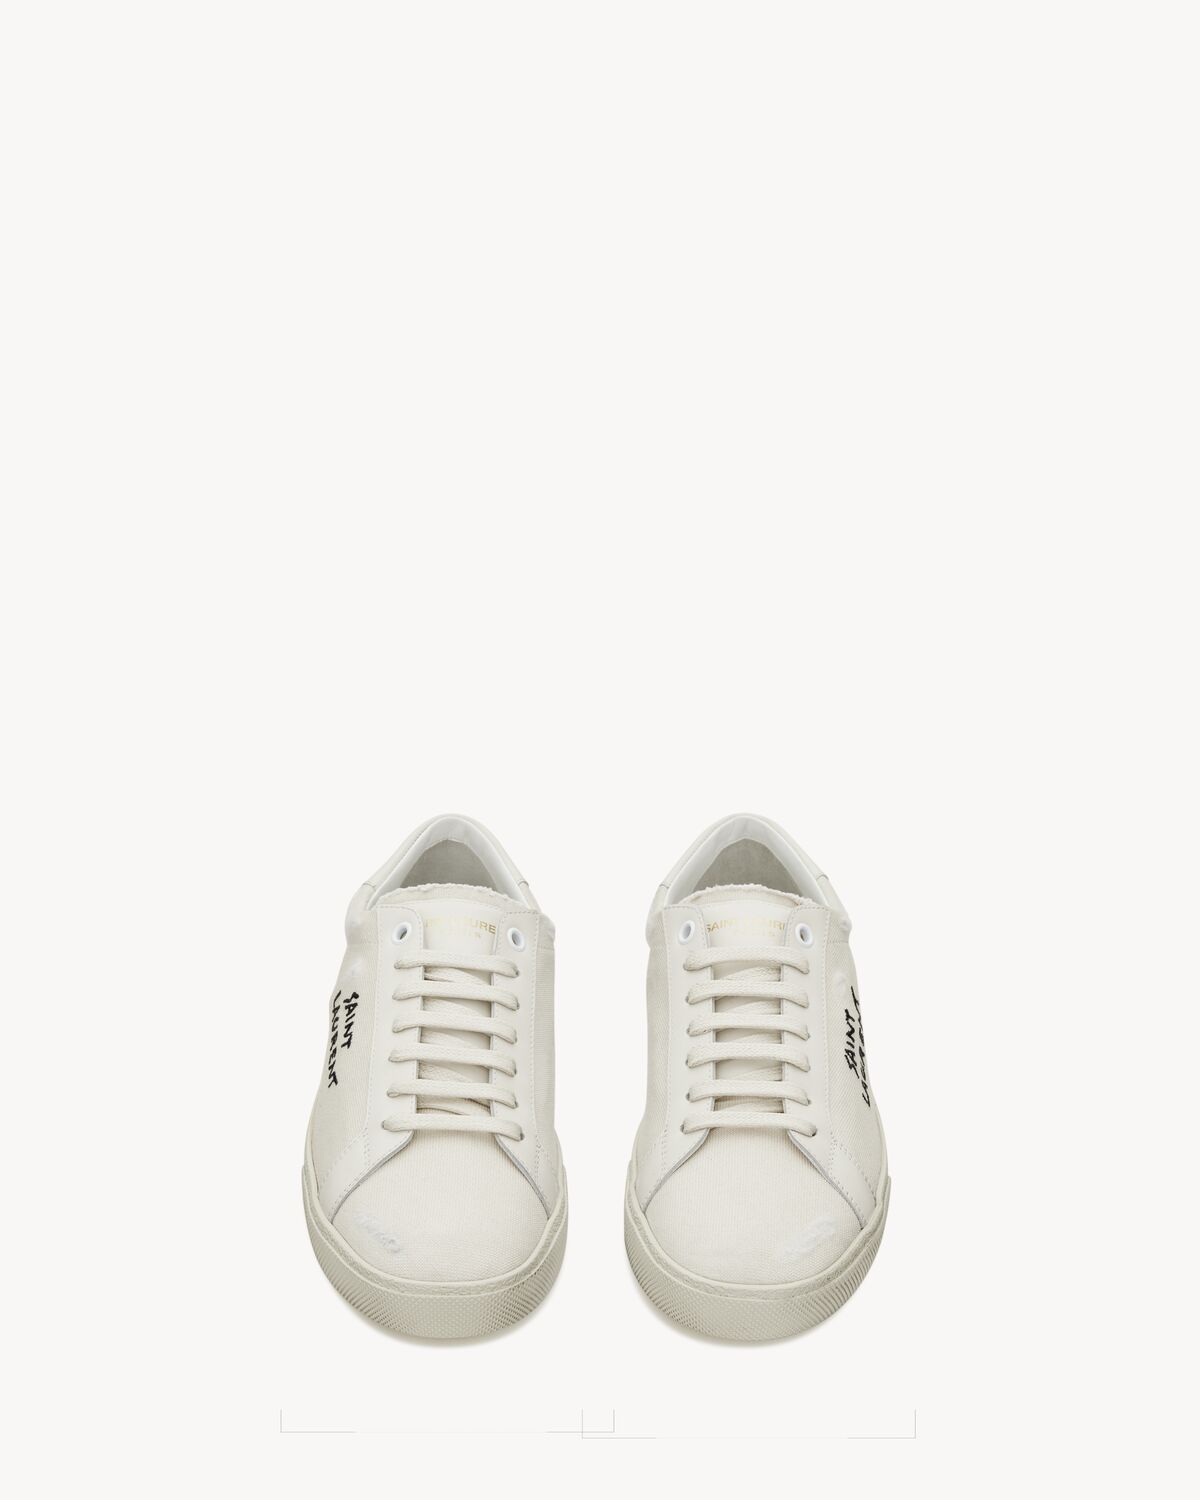 Sneakers Court Classic SL/06 con bordado Saint Laurent, de lona blanca efecto desgastado y piel